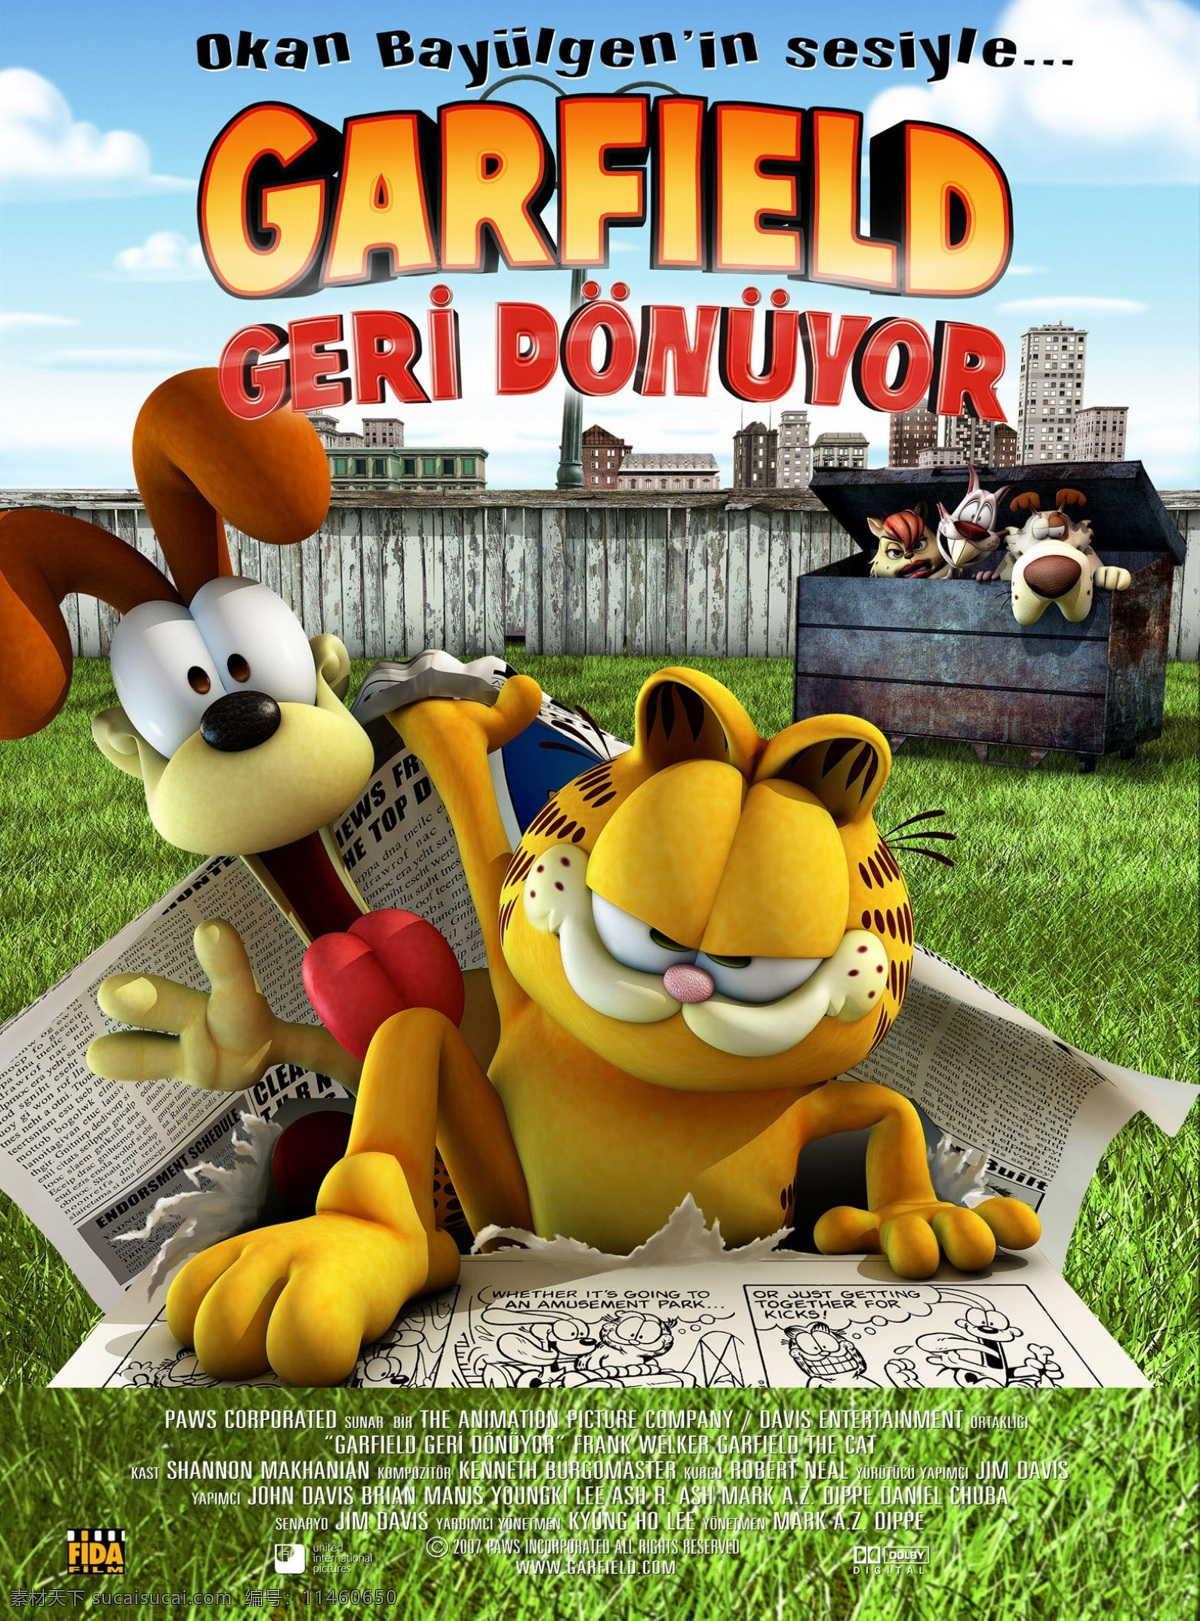 加菲猫 现实 世界 历险记 卡通 搞笑 喜剧 3d 可爱 电影高清图片 影视娱乐 文化艺术